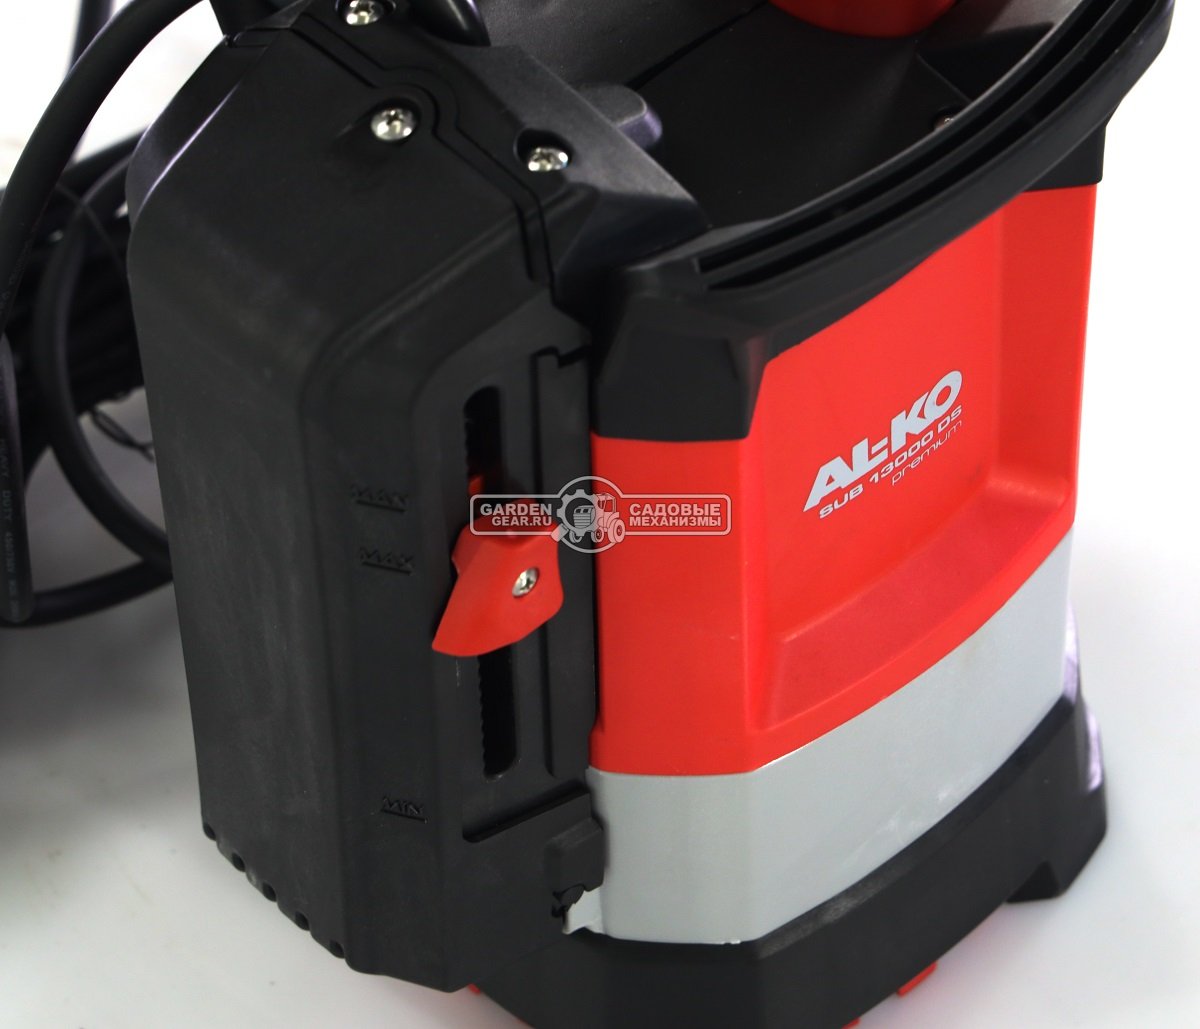 Дренажный насос Al-ko SUB 13000 DS Premium для чистой воды (PRC, 650 Вт., 8 м, 10.5 м3/час, 5 кг.)